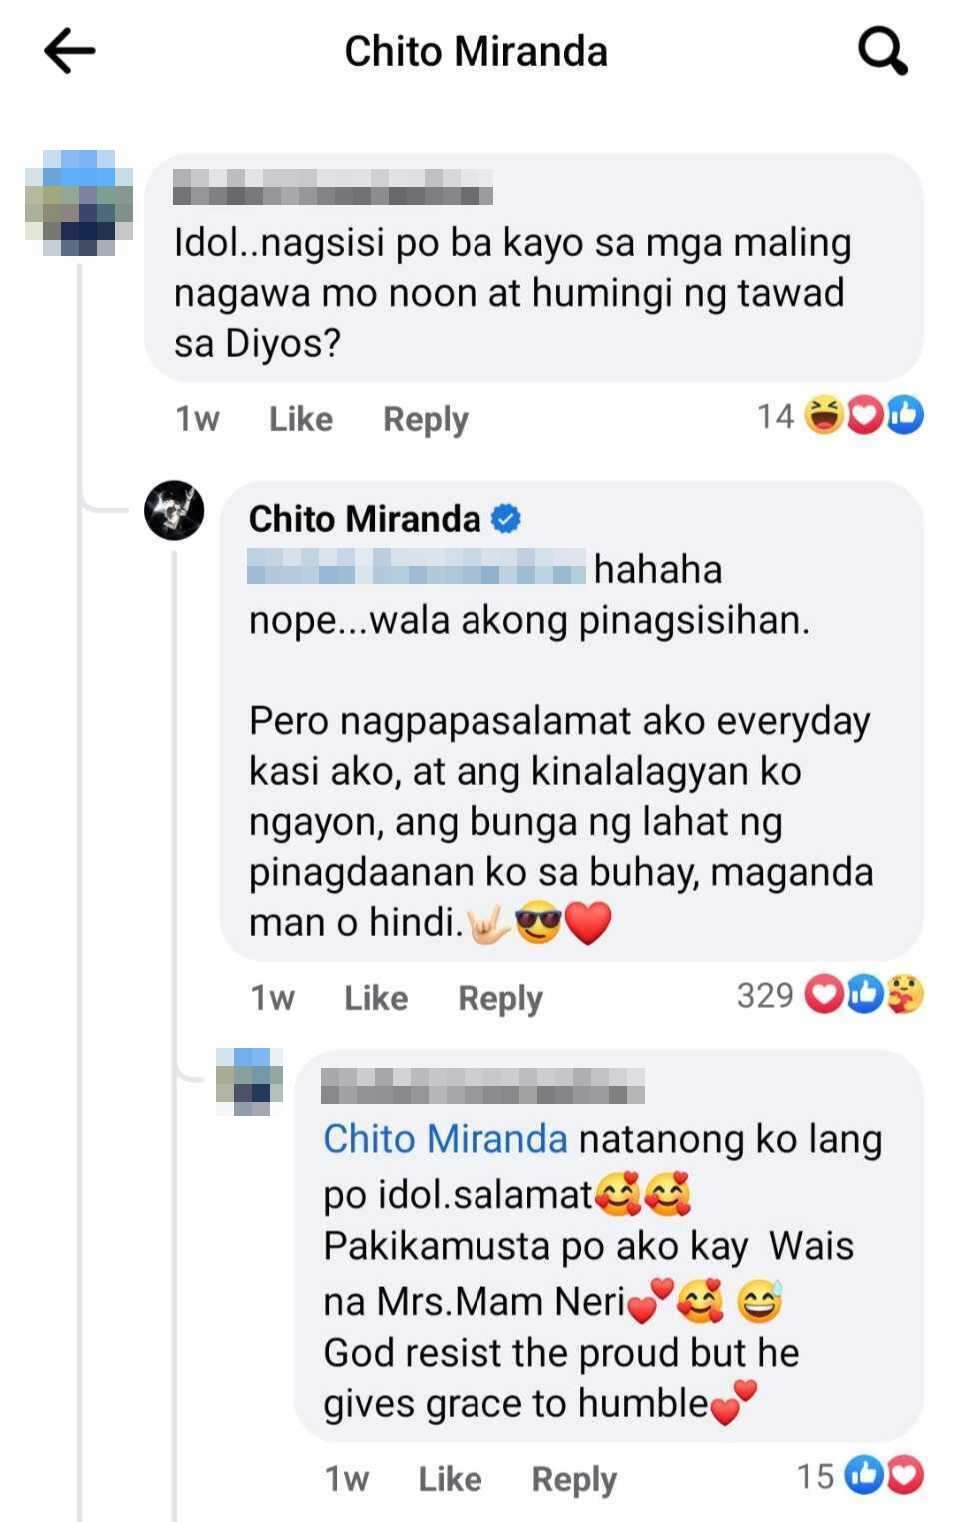 Chito Miranda, sinagot ang tanong ng netizen kung pinagsisihan ang maling nagawa noon: "Nope"